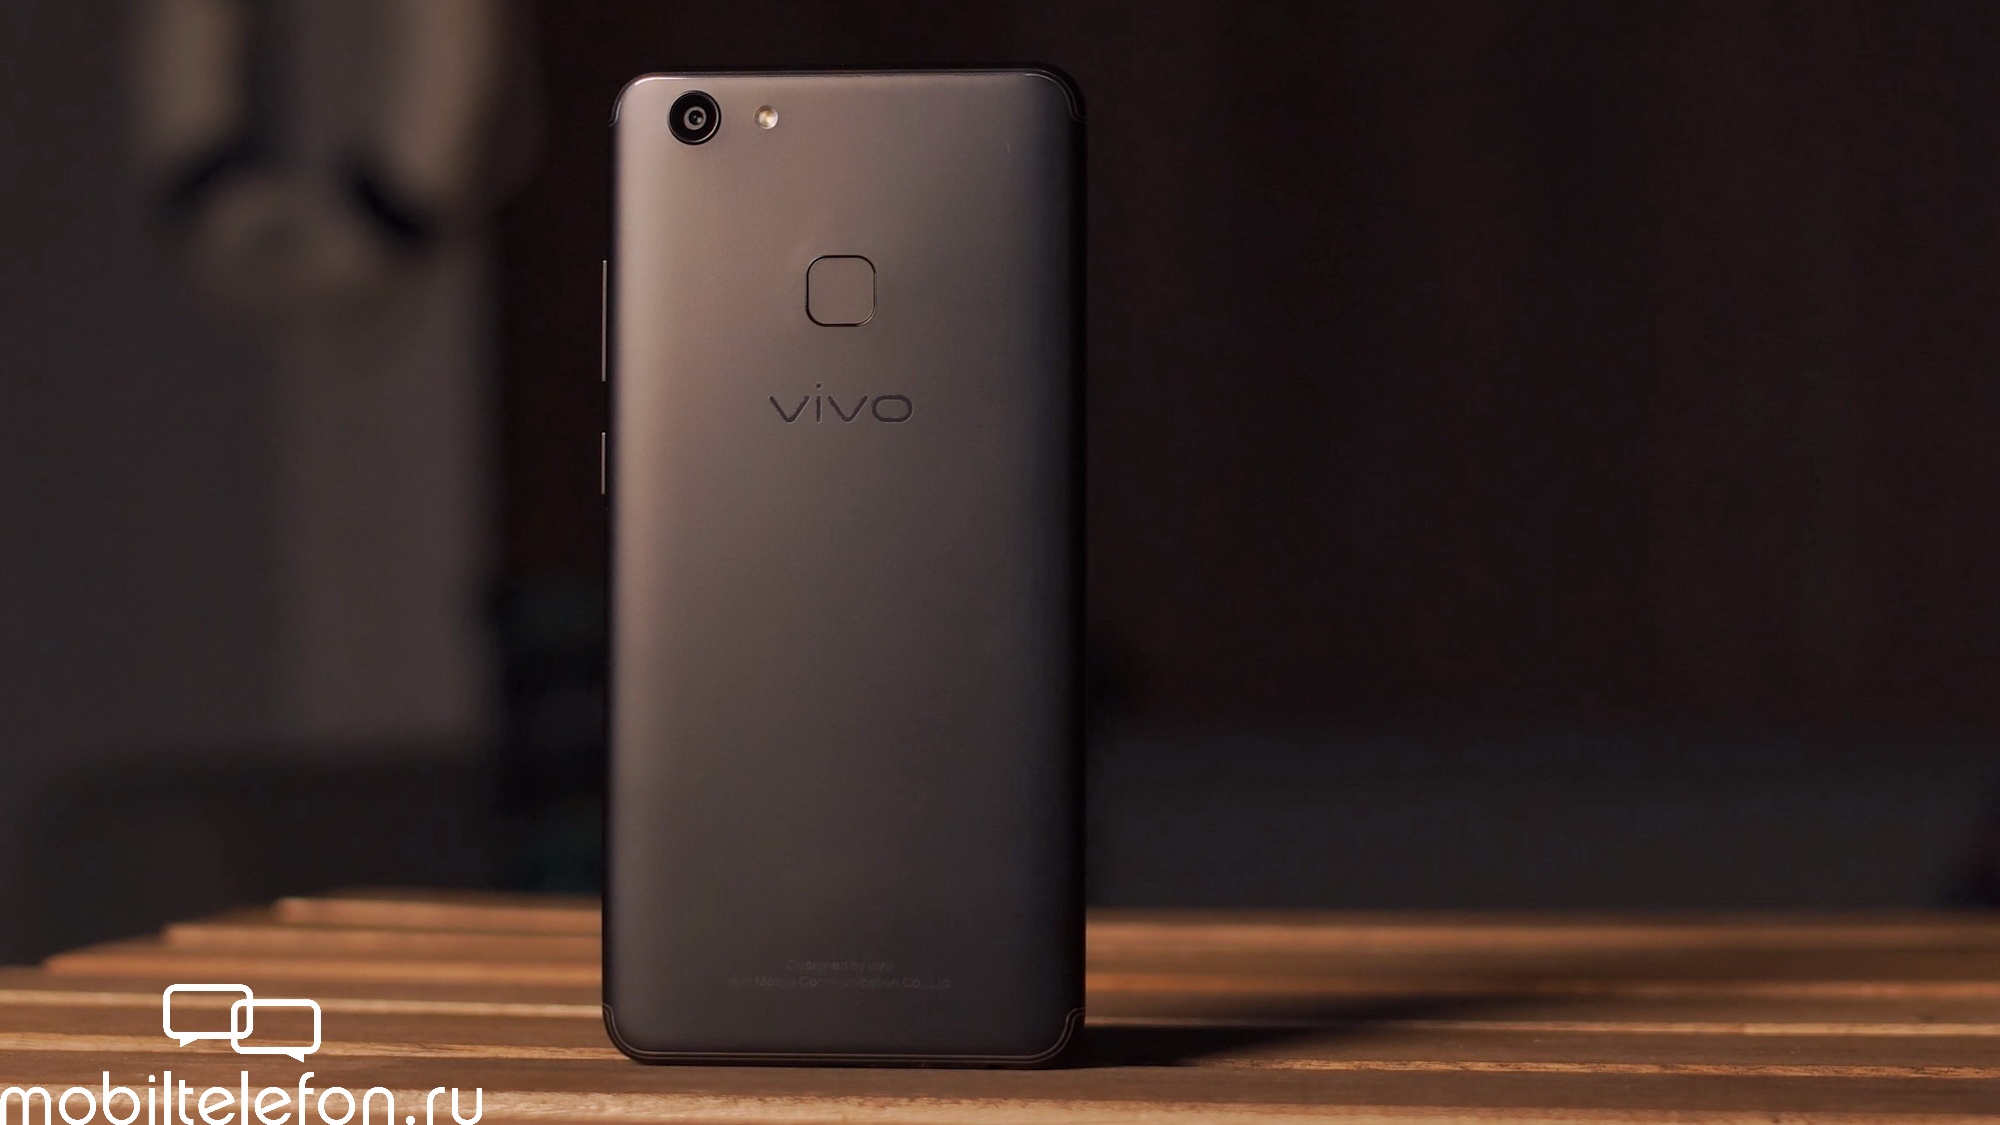 Vivo v7: технические характеристики и другие подробности